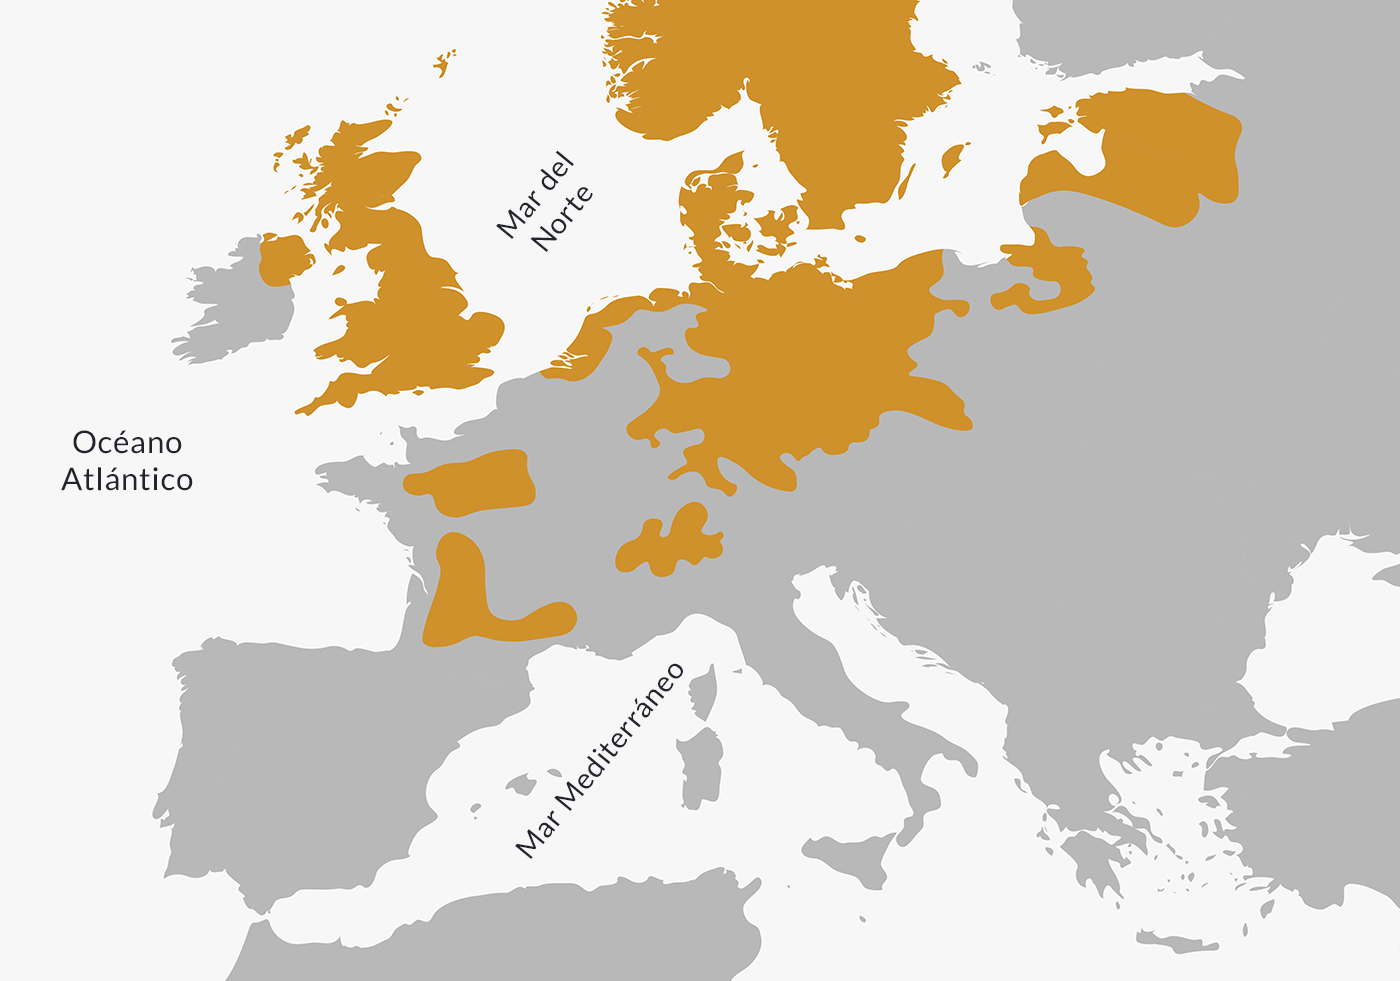 Extensión del protestantismo en Europa hacia fines del siglo XVI.